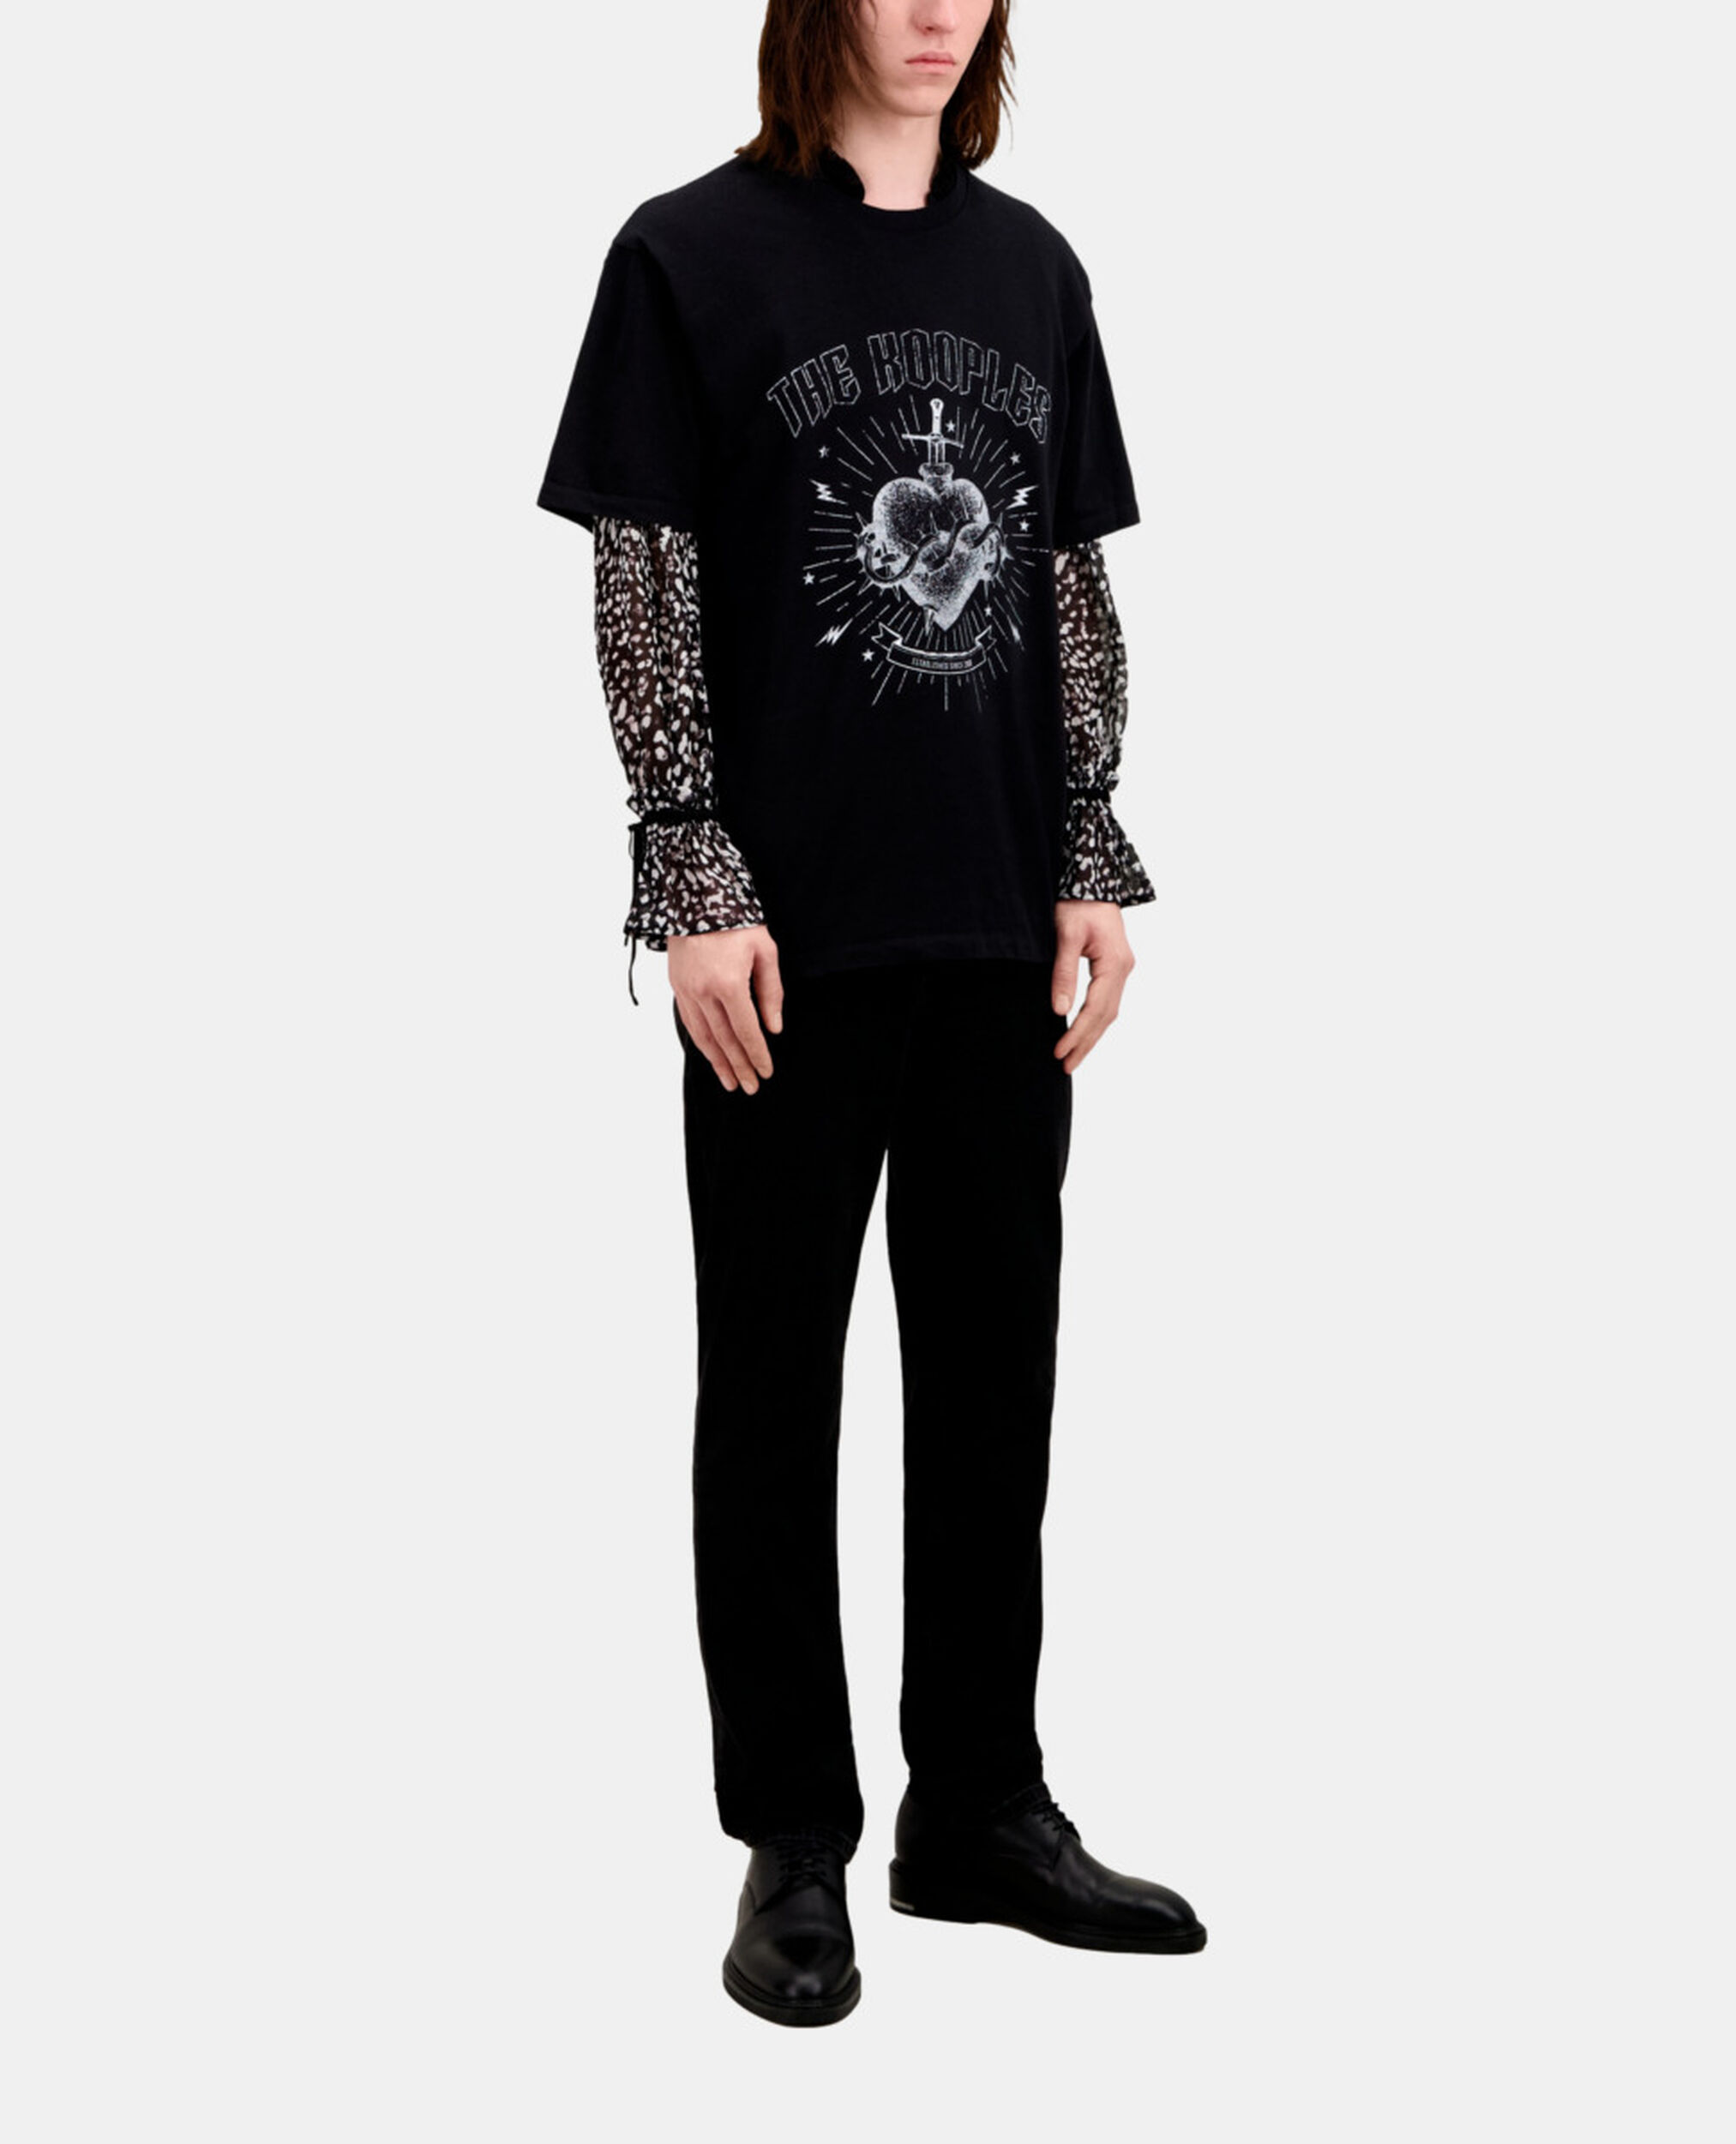 Schwarzes T-Shirt Herren mit Siebdruck, BLACK WASHED, hi-res image number null